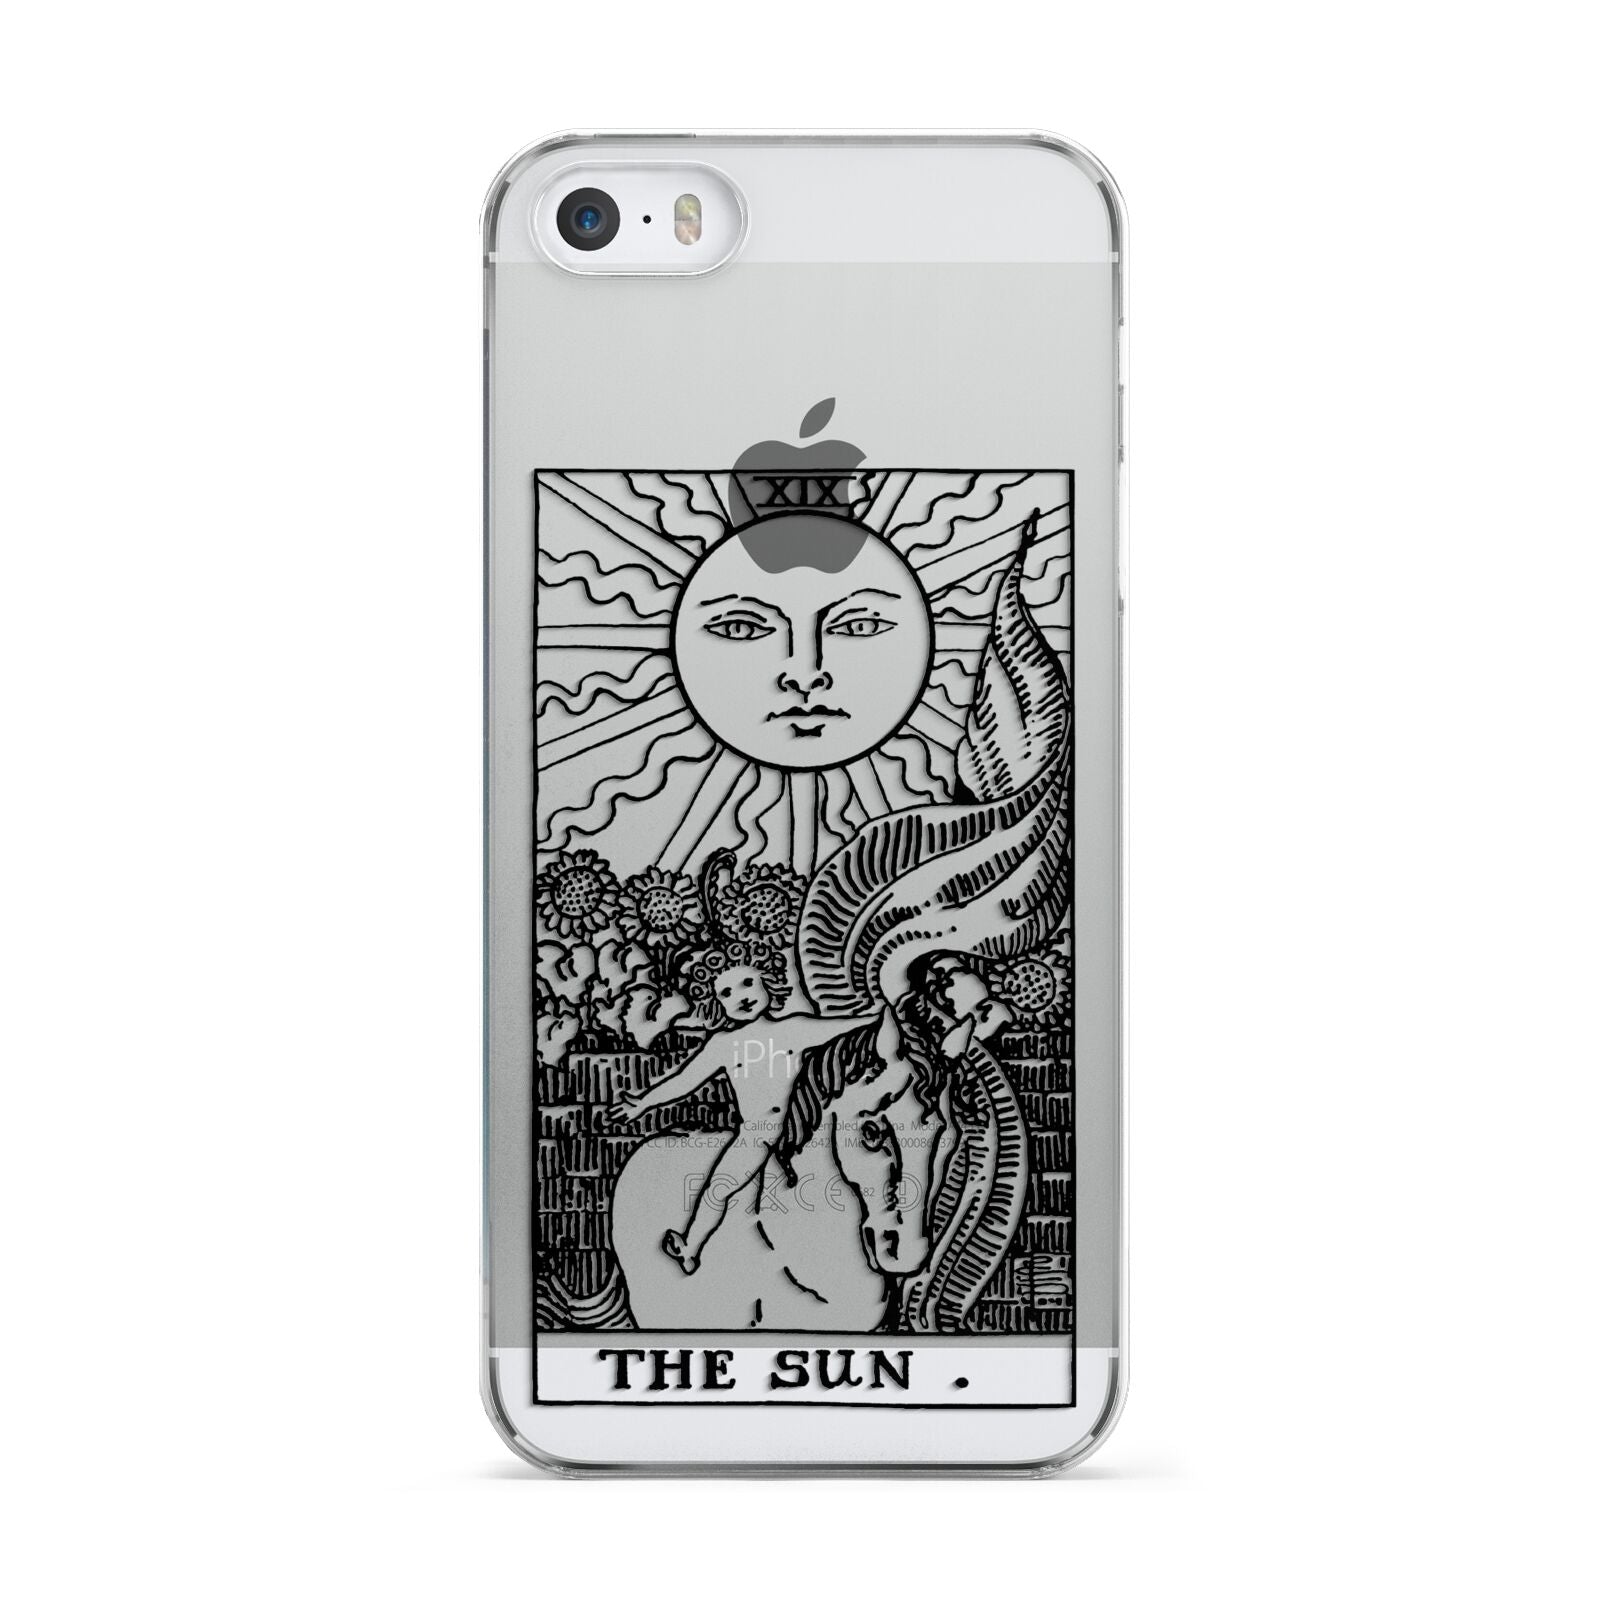 The Sun Monochrome Apple iPhone 5 Case